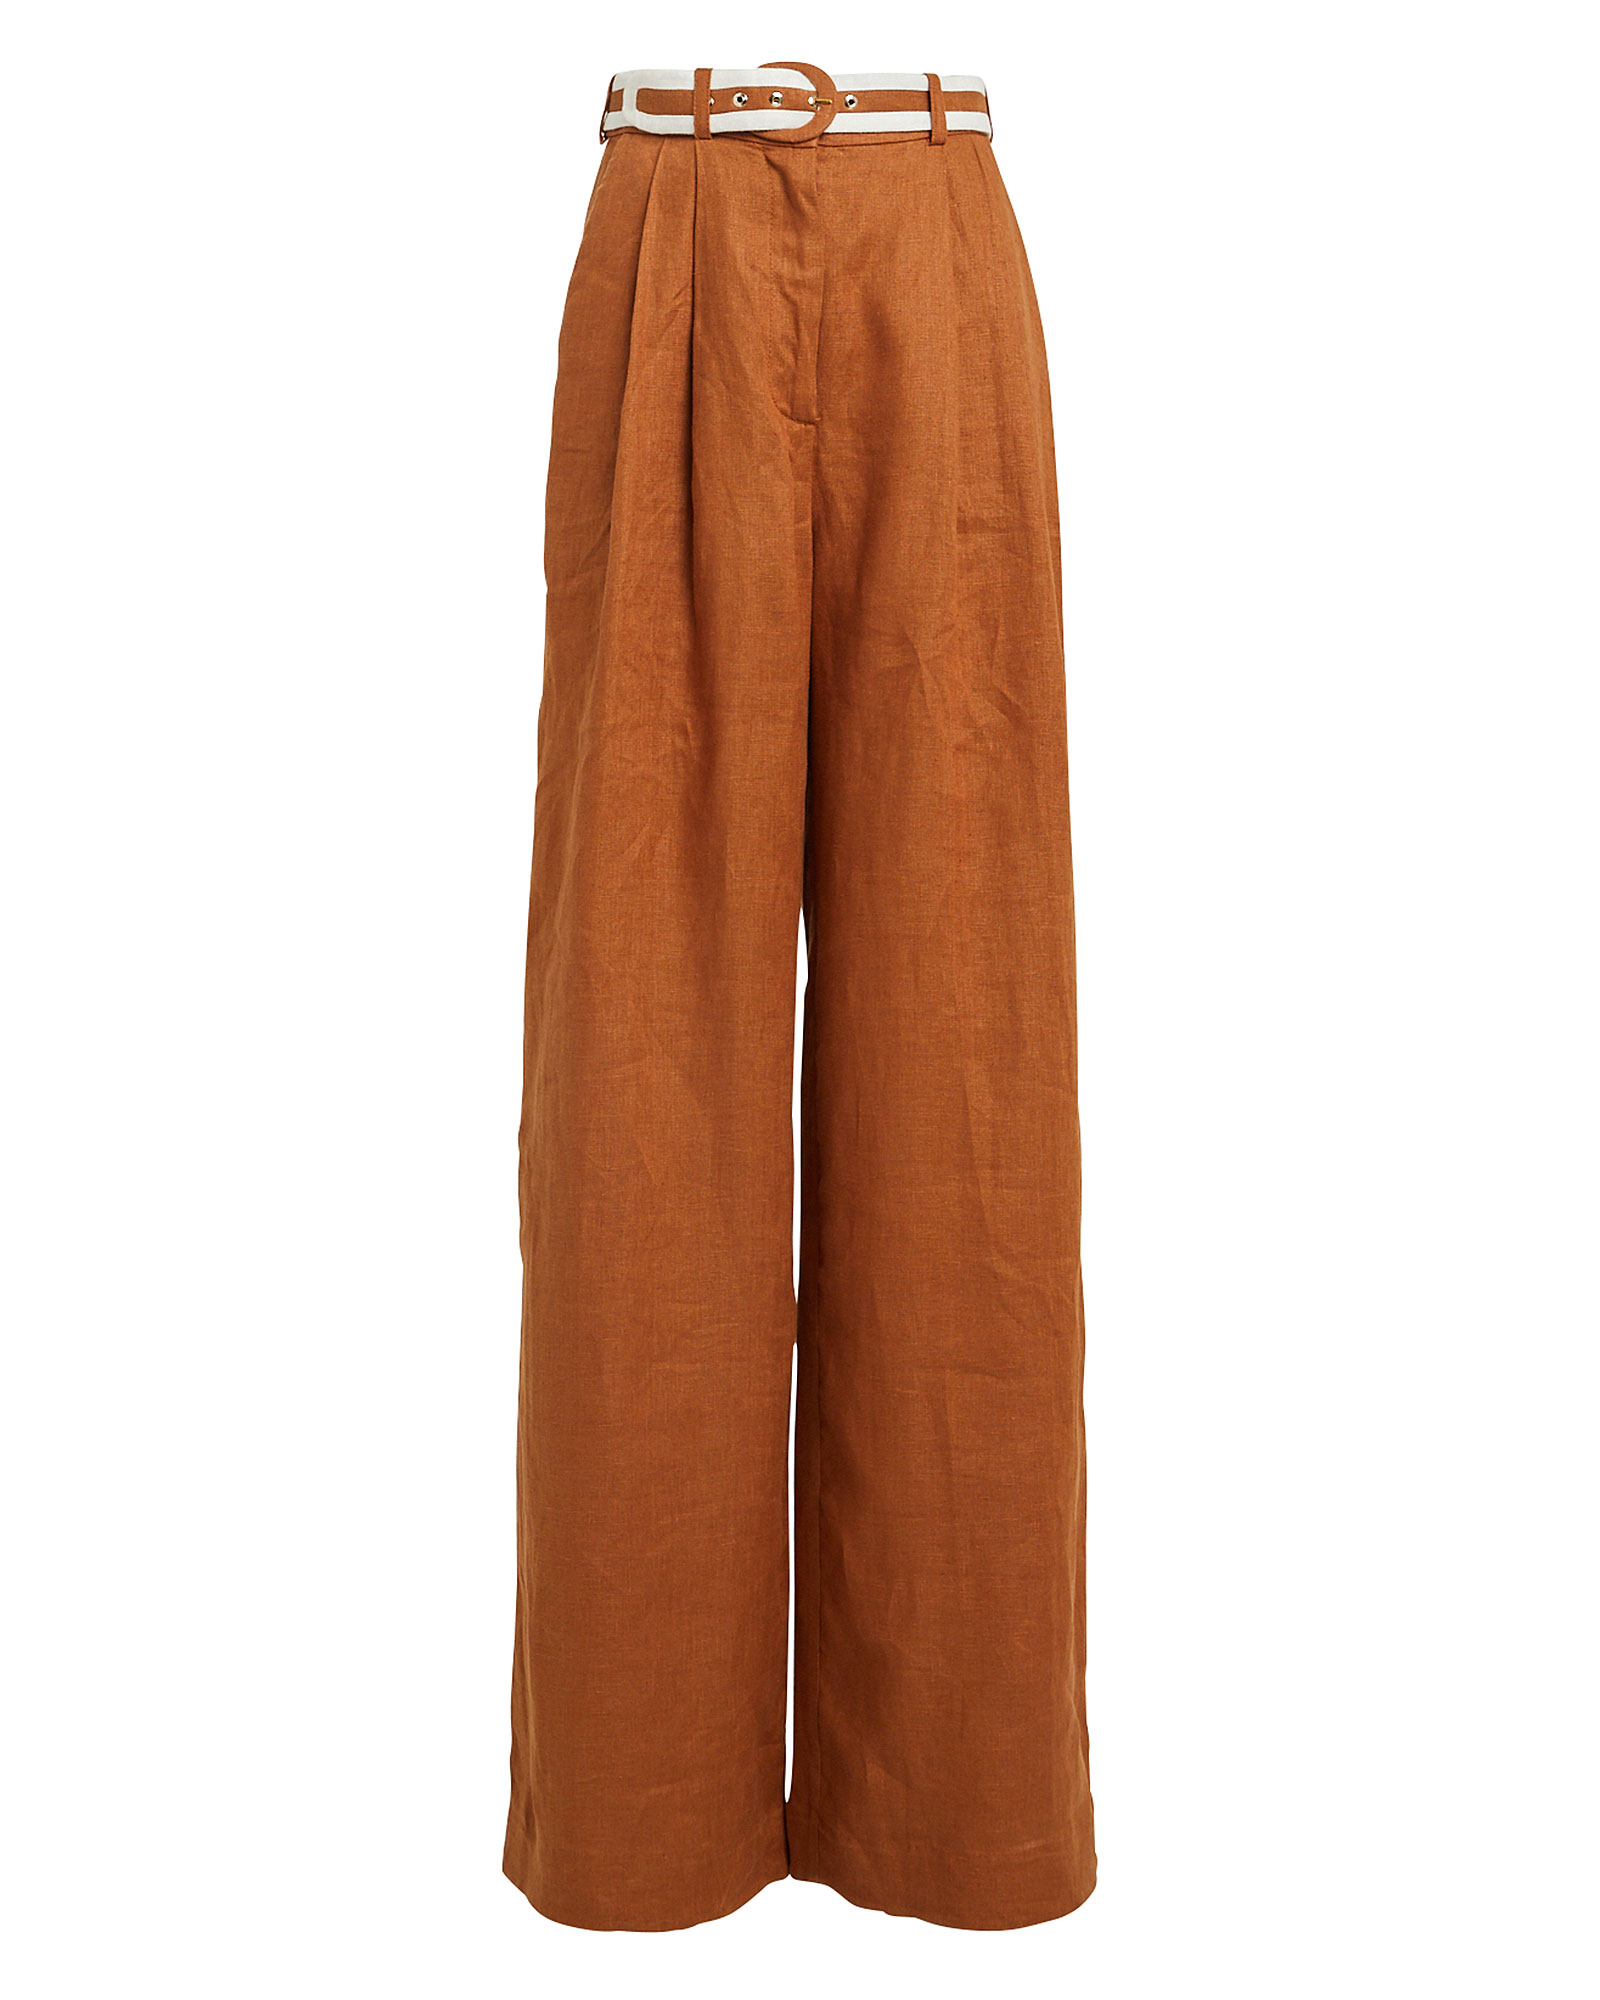 Zimmermann | Super Eight Linen Trousers | INTERMIX®